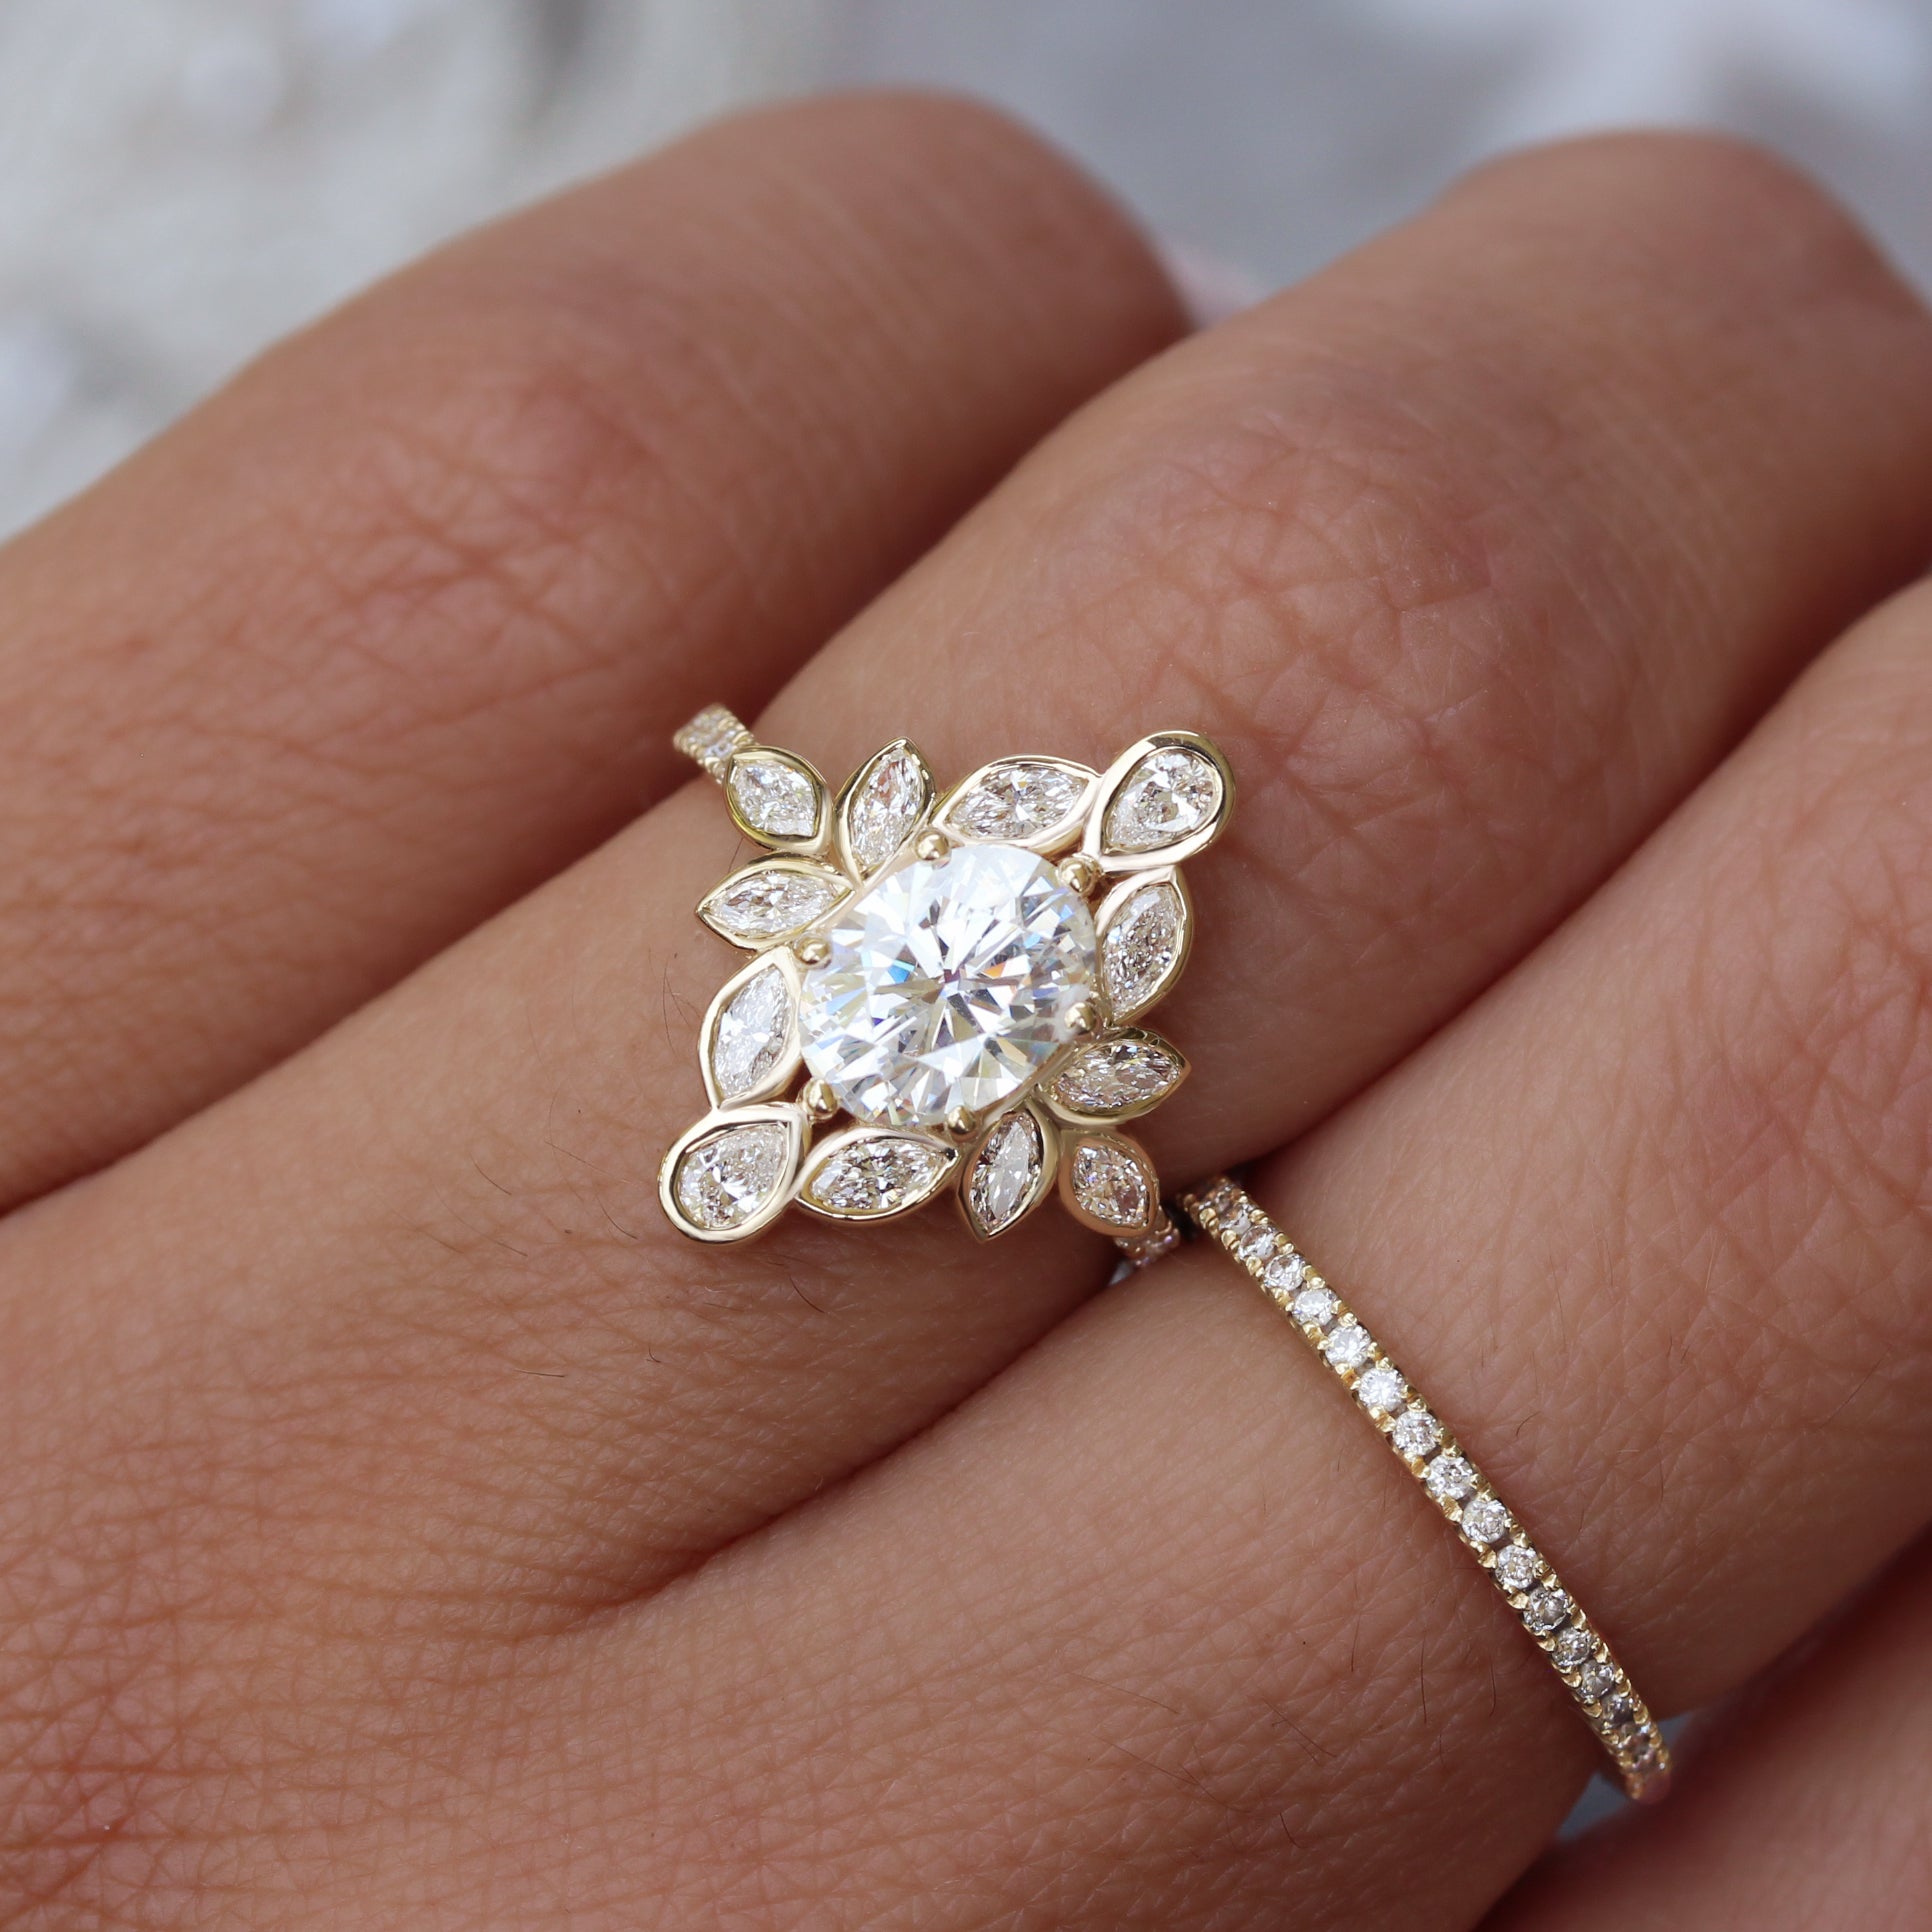 Rm1431-14k White Gold Infinity Engagement Ring - RM1431TT-M85